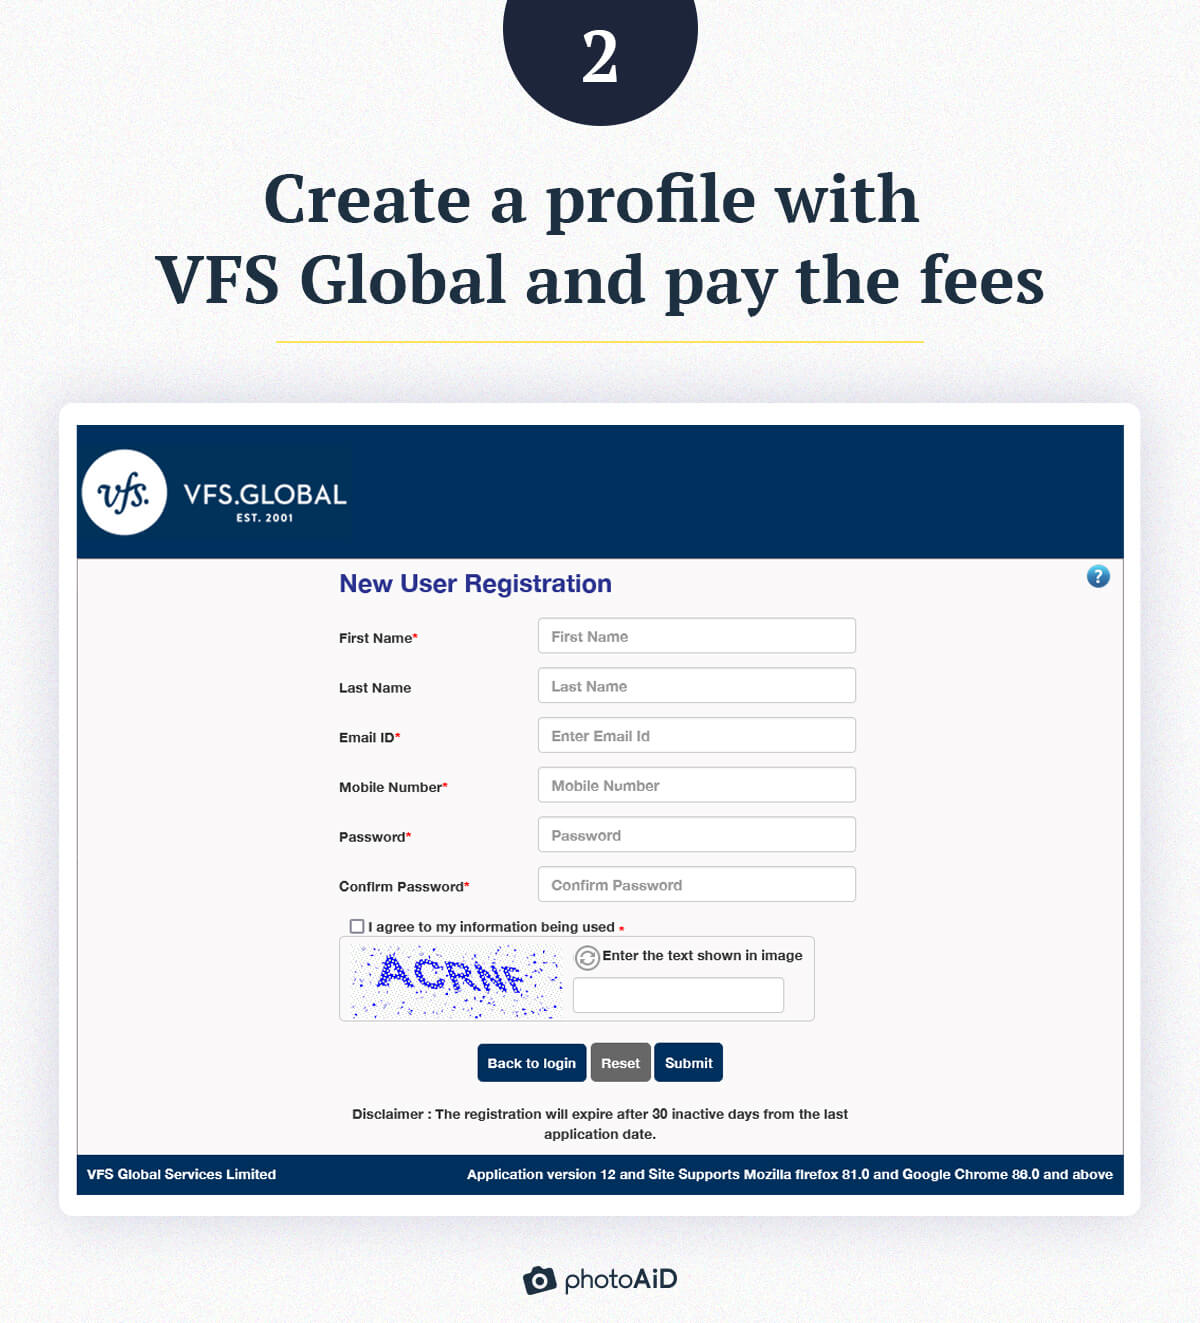 The VFS Global registration form.